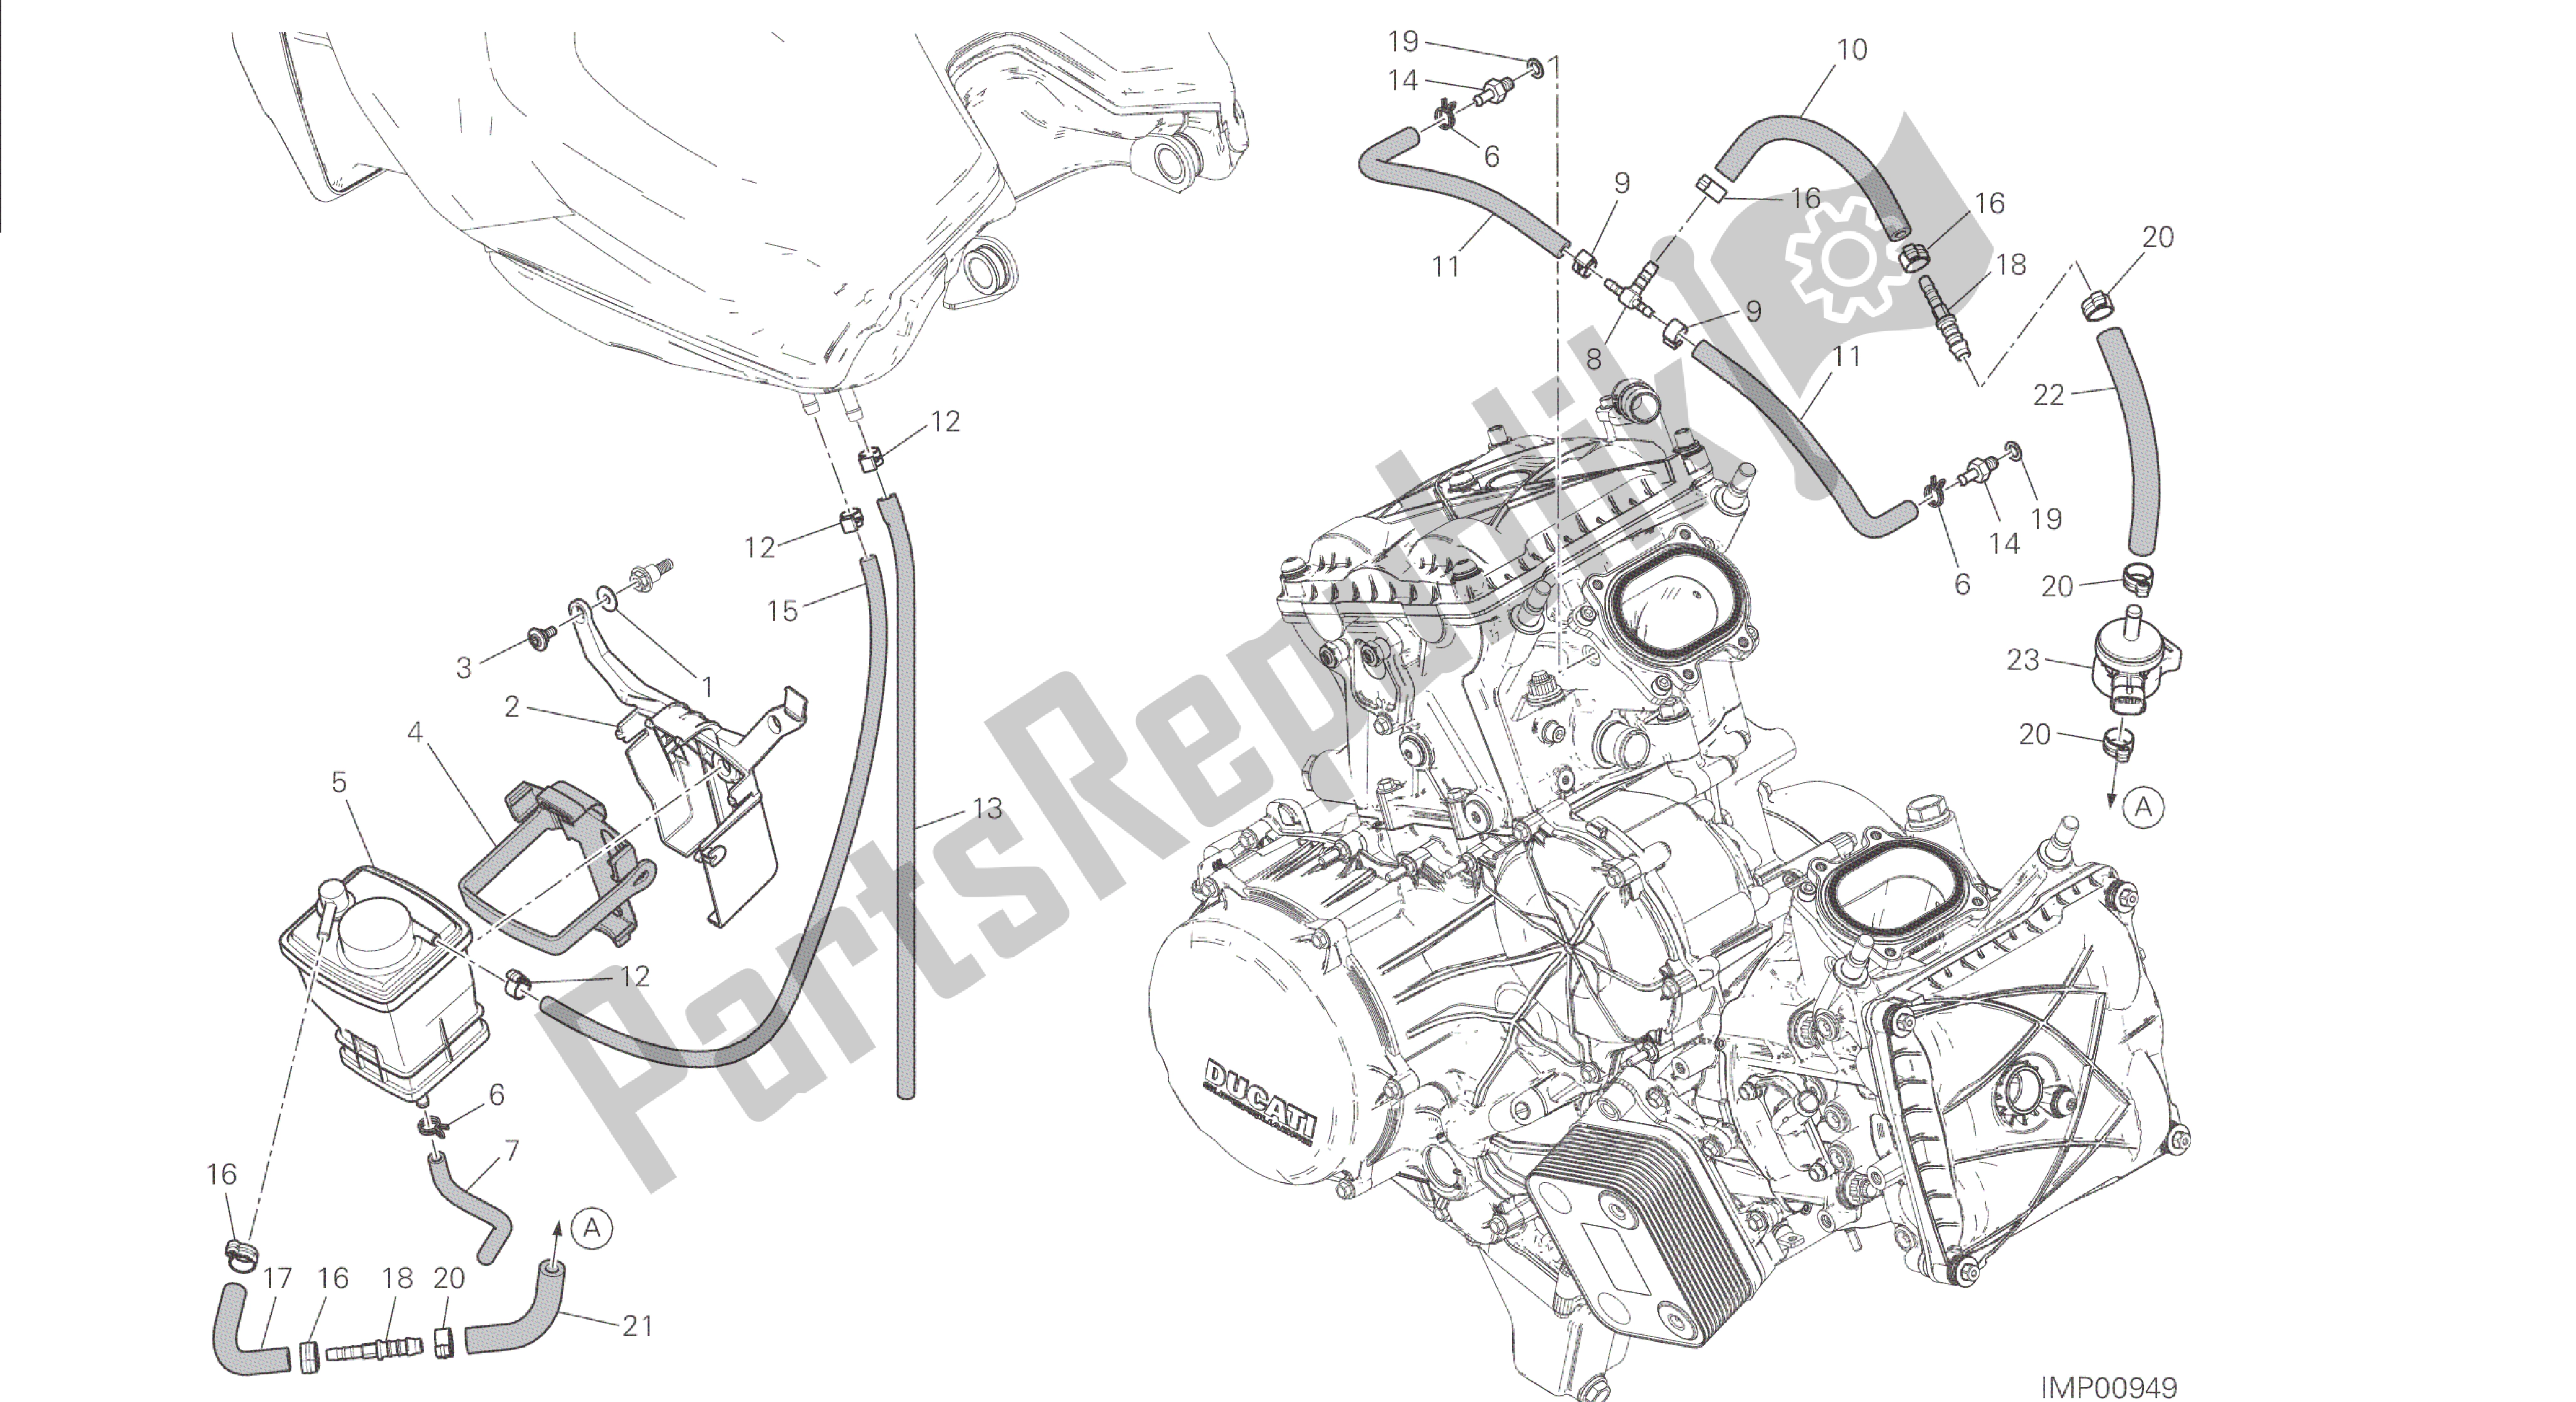 Alle onderdelen voor de Tekening 035 - Busfilter [mod: 1299; Xst: Twn] Groepsframe van de Ducati Panigale 1299 2015